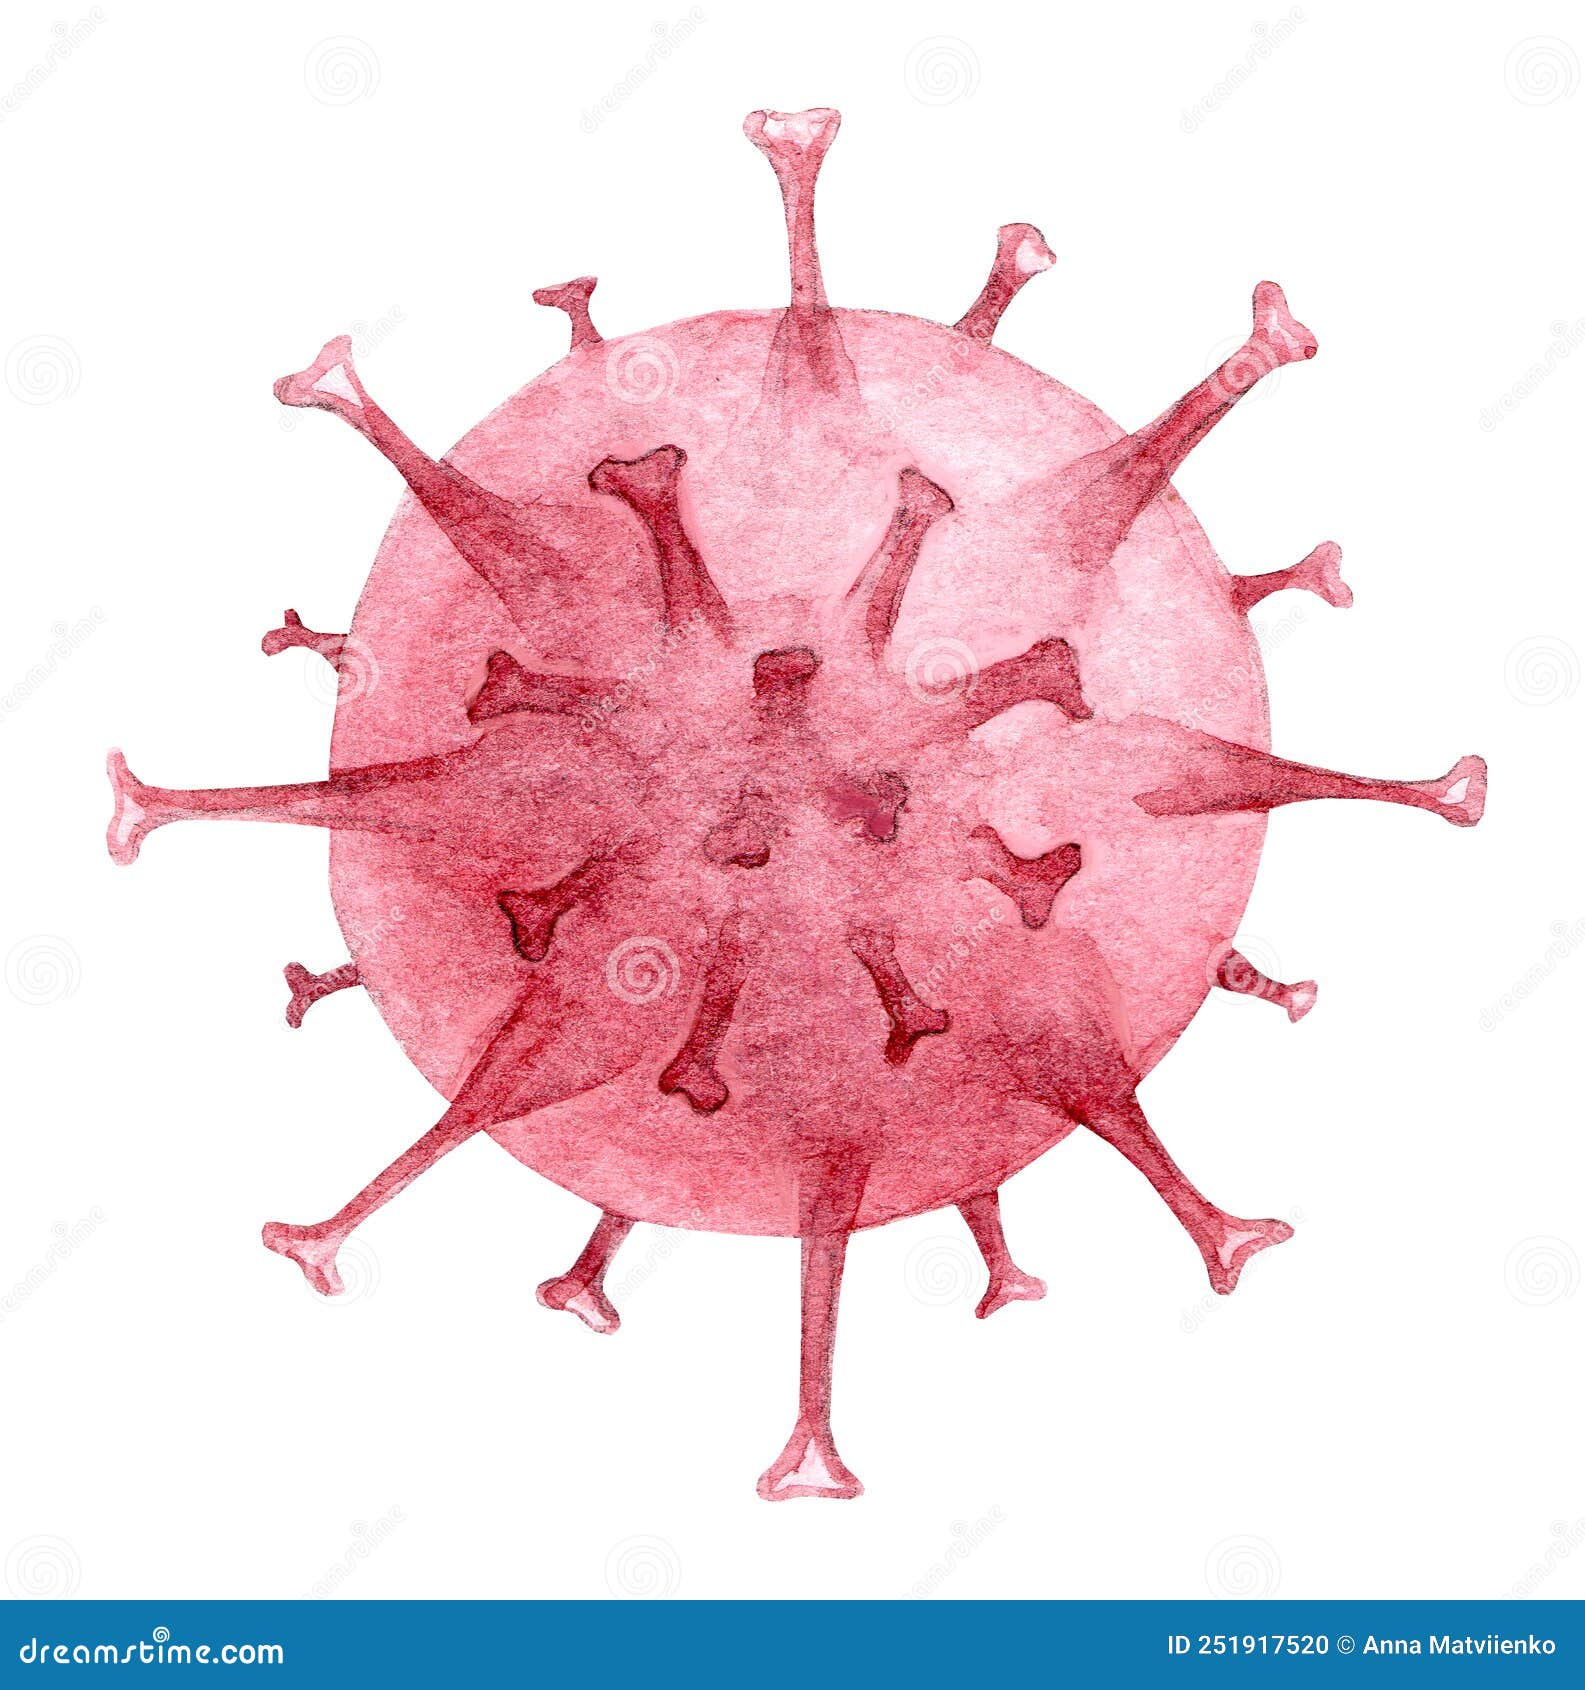 monkeypox virus cell. orthopoxvirus fever stockpile watercolor .